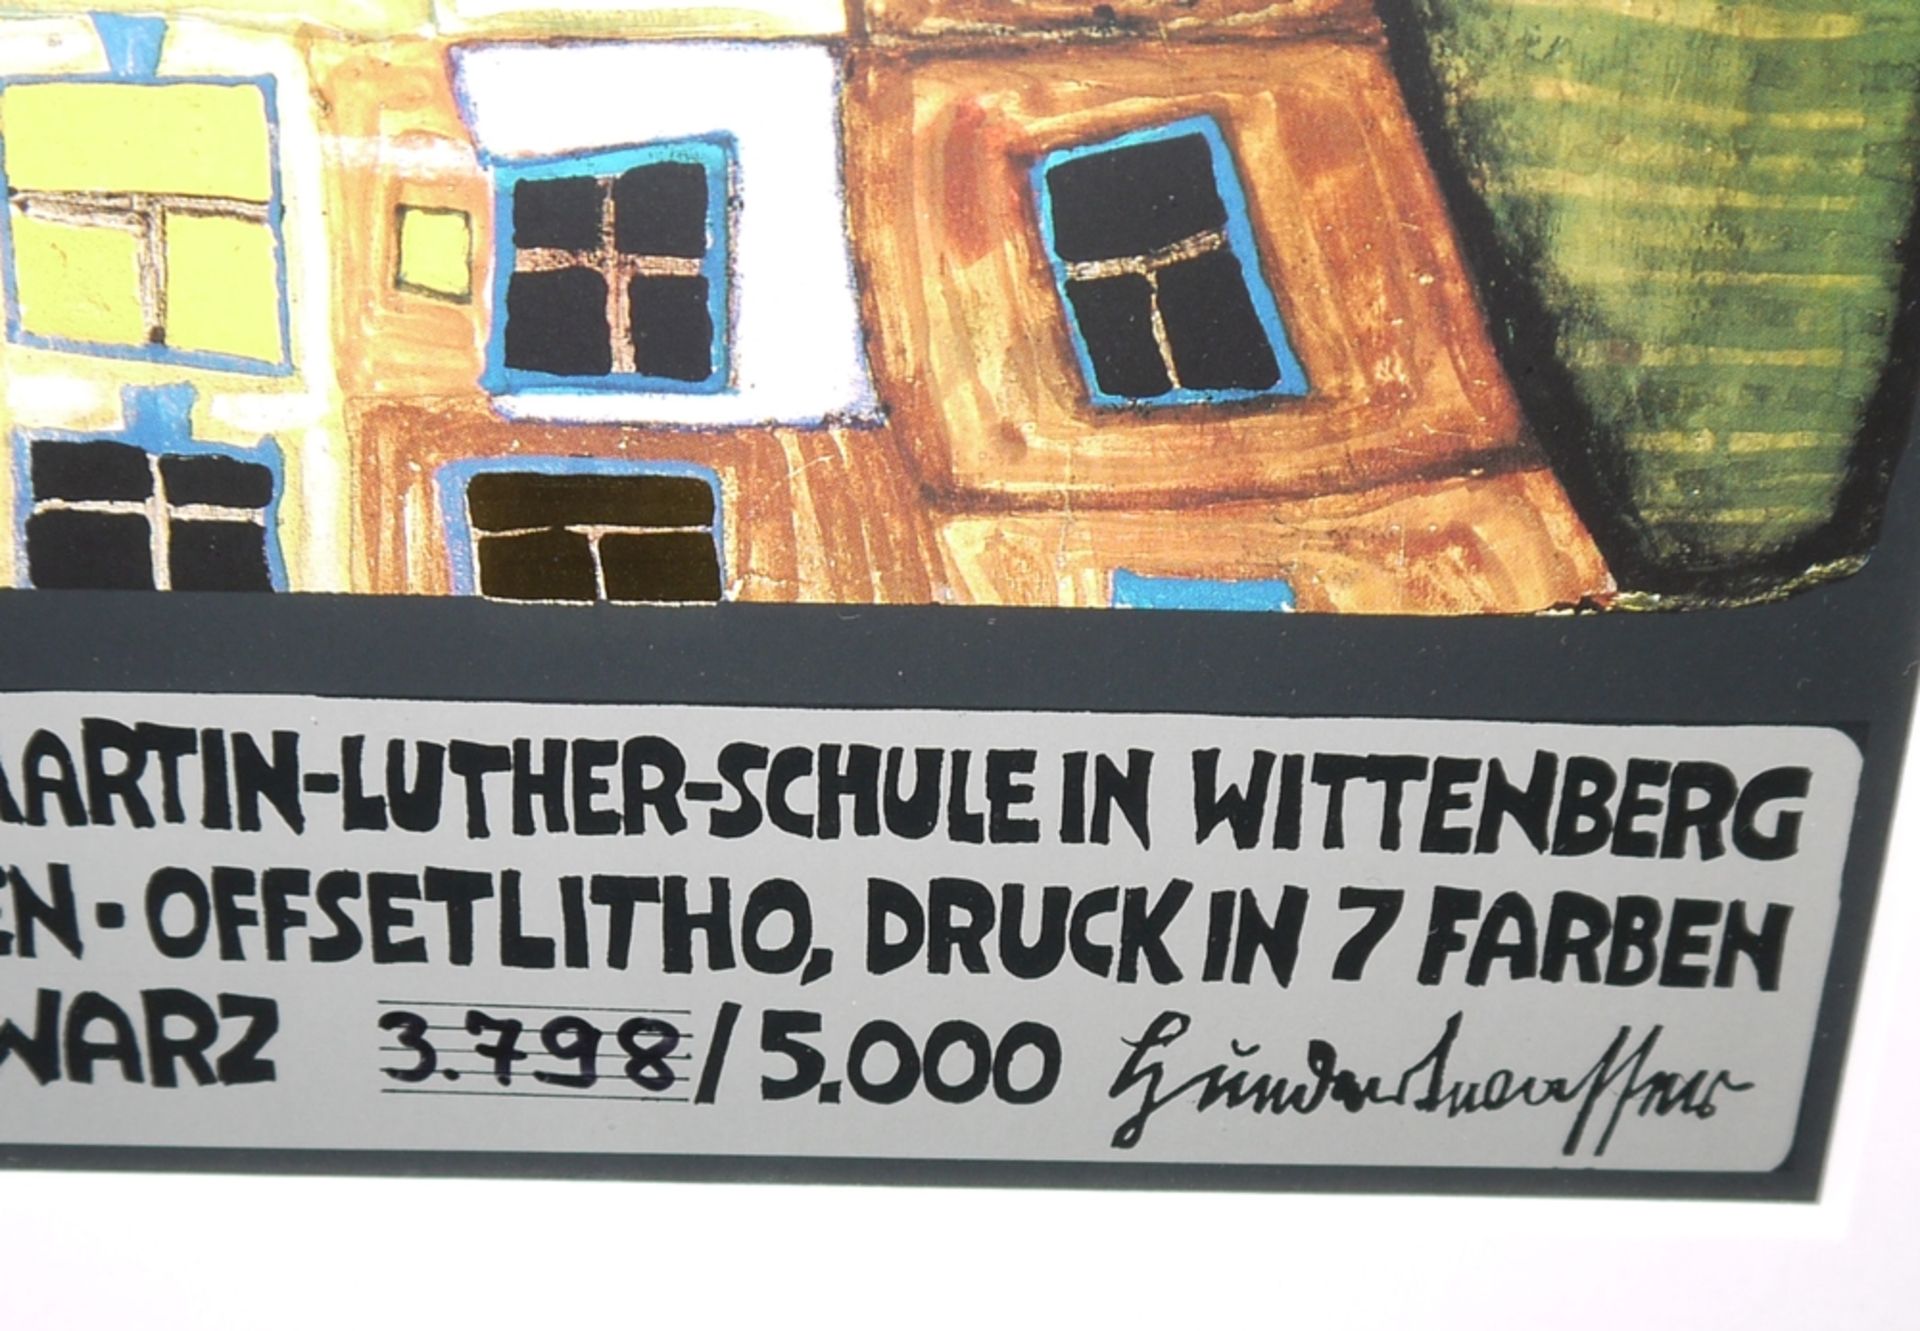 Friedensreich Hundertwasser, Baustein (II), Wittenberg, Farboffsetlithographie, 1996, - Image 2 of 2